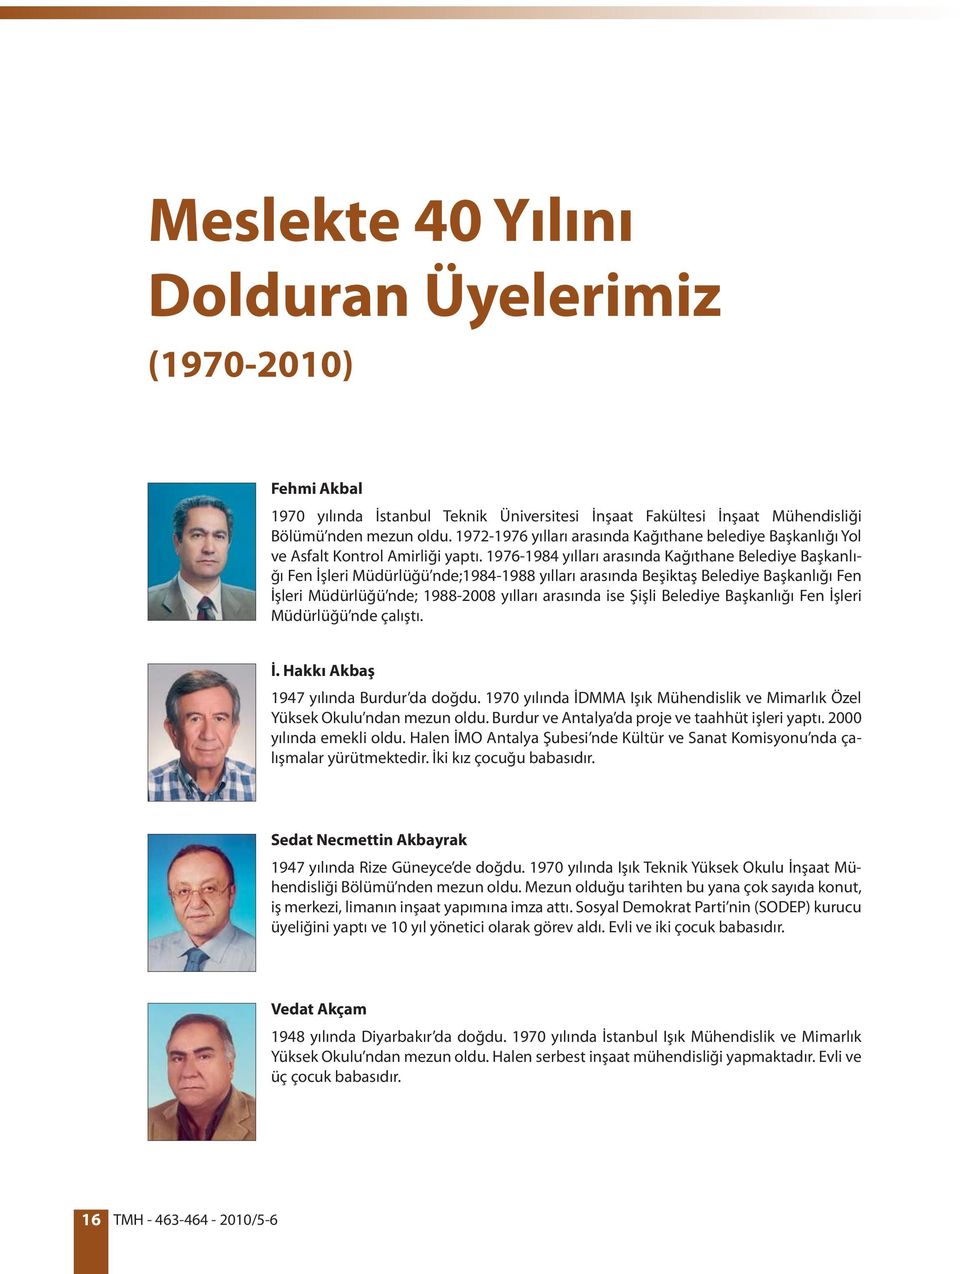 1976-1984 yılları arasında Kağıthane Belediye Başkanlığı Fen İşleri Müdürlüğü nde;1984-1988 yılları arasında Beşiktaş Belediye Başkanlığı Fen İşleri Müdürlüğü nde; 1988-2008 yılları arasında ise